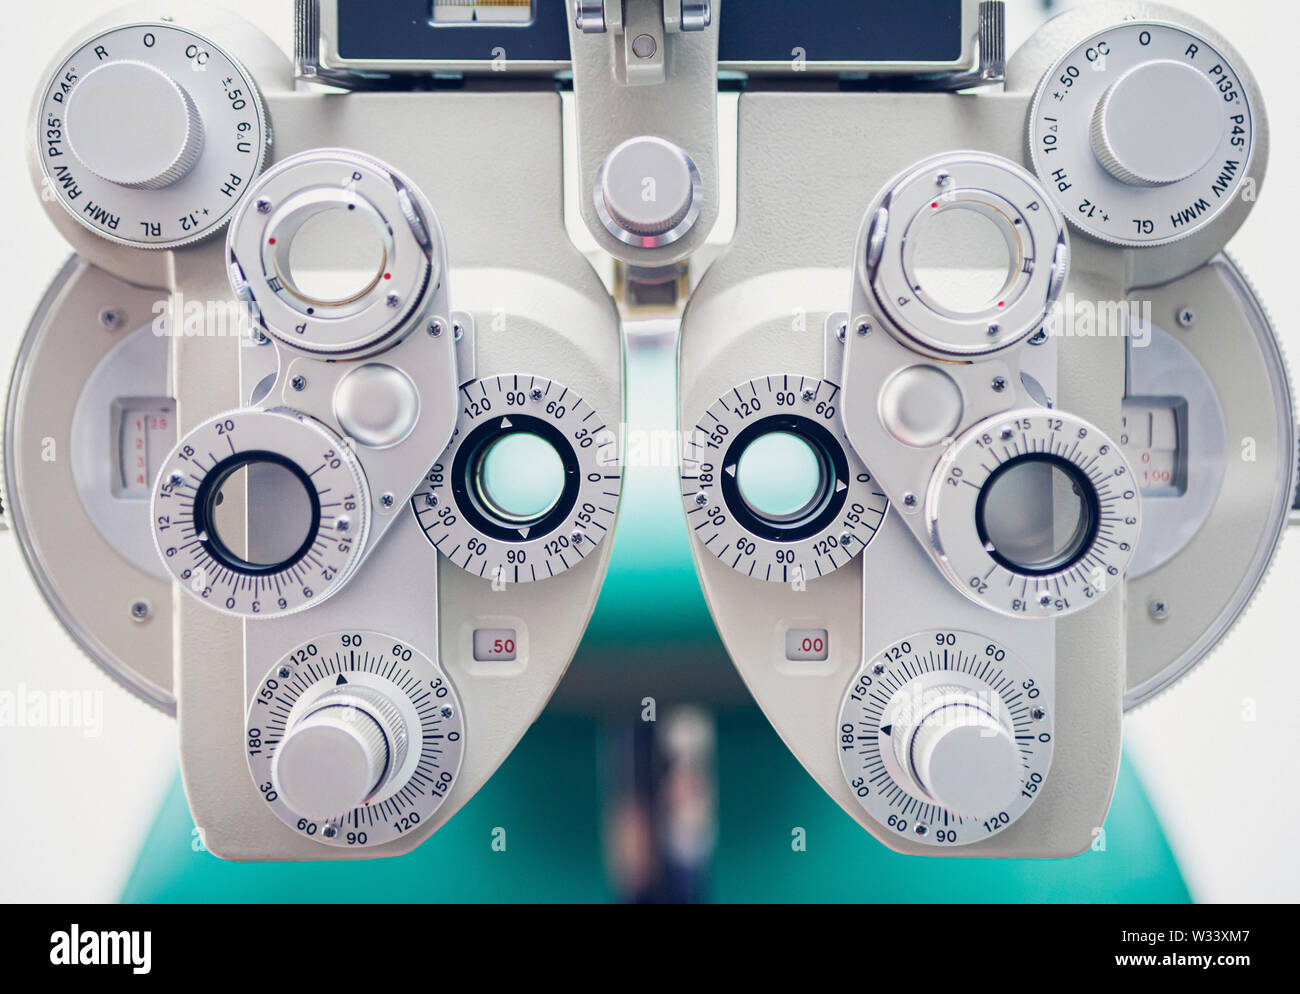 Phoropter, Augenheilkunde, Optometrie, Maschinenausrüstung. Optikerinstrument zur Messung des Sehens. Augentestgeräte. Stockfoto